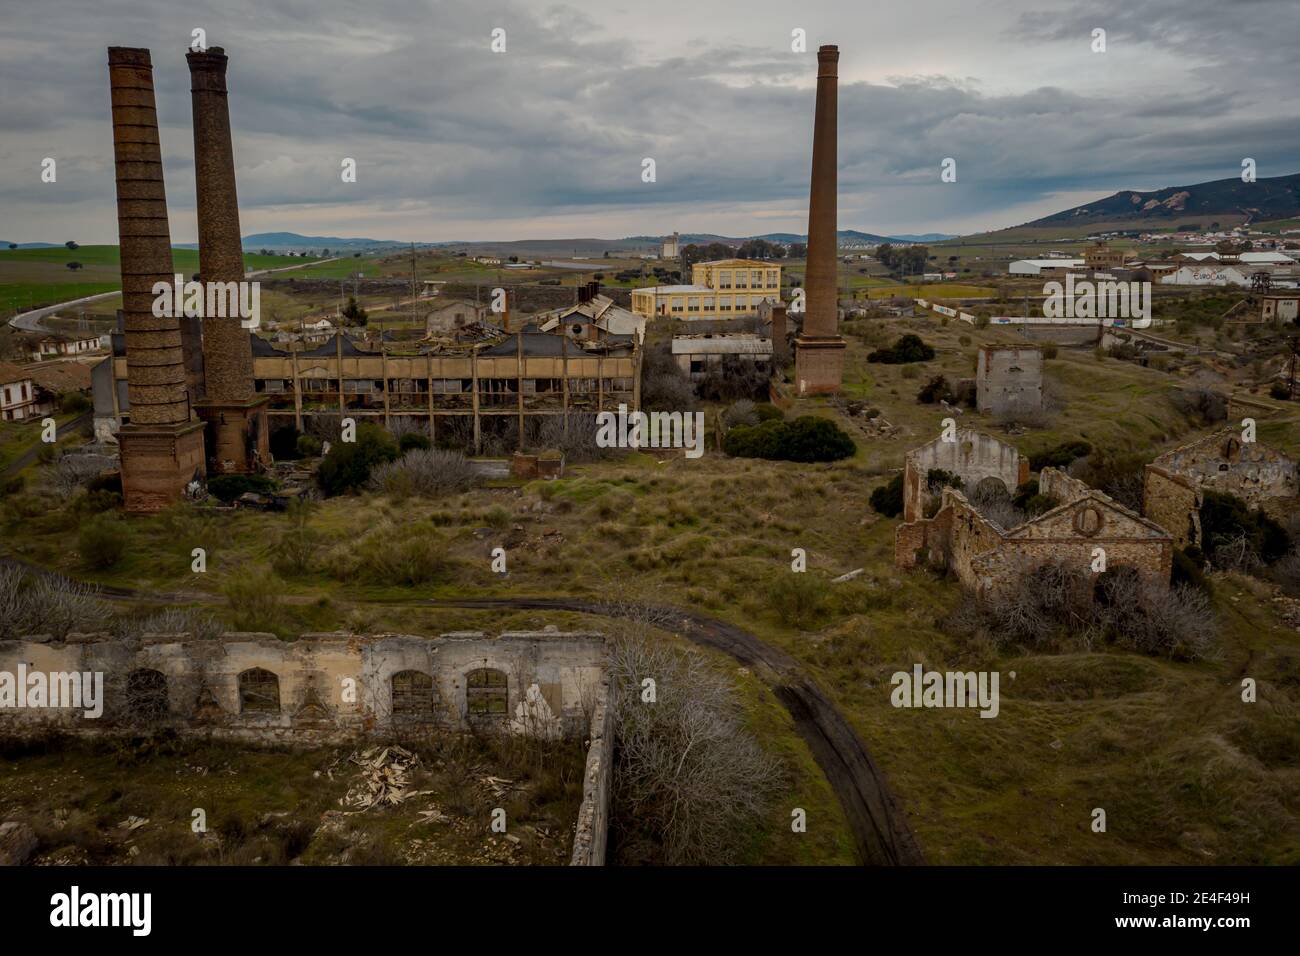 Vue aérienne de l'ancienne exploitation minière abandonnée peñarroya-pueblonuevo Espagne Lieux industriels abandonnés Banque D'Images